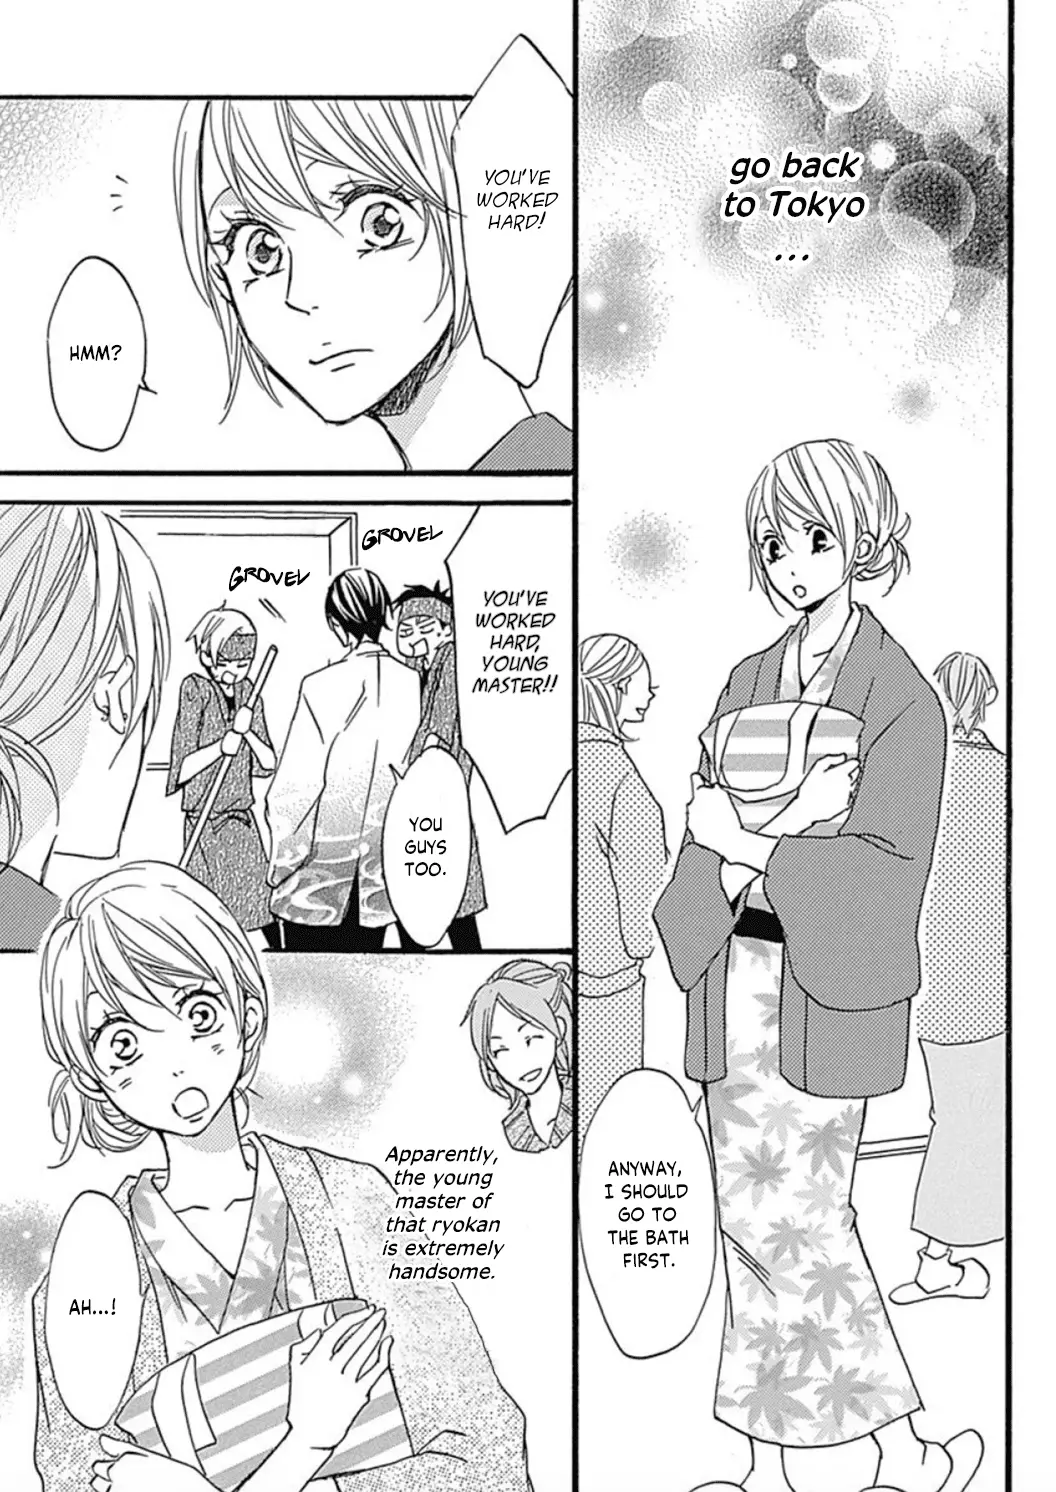 Tappuri No Kiss Kara Hajimete - 2 page 12-8401f954